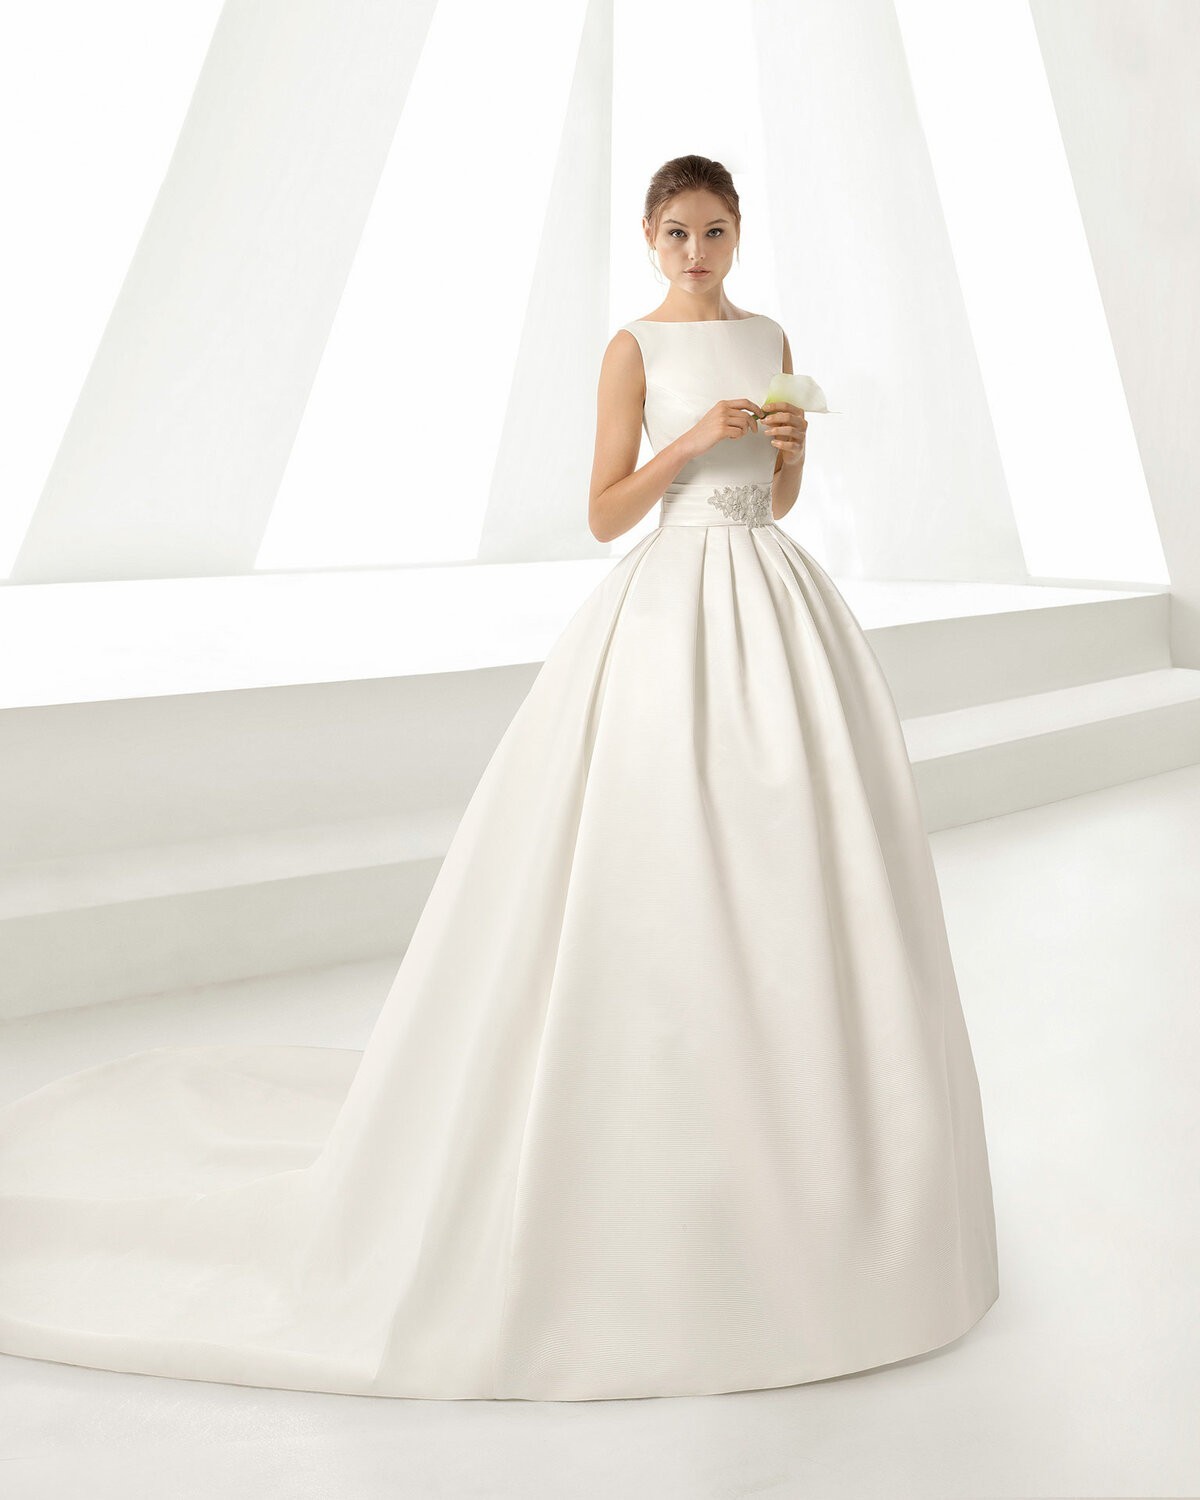 OPULENTO - abito da sposa collezione 2020 - Rosa Clarà